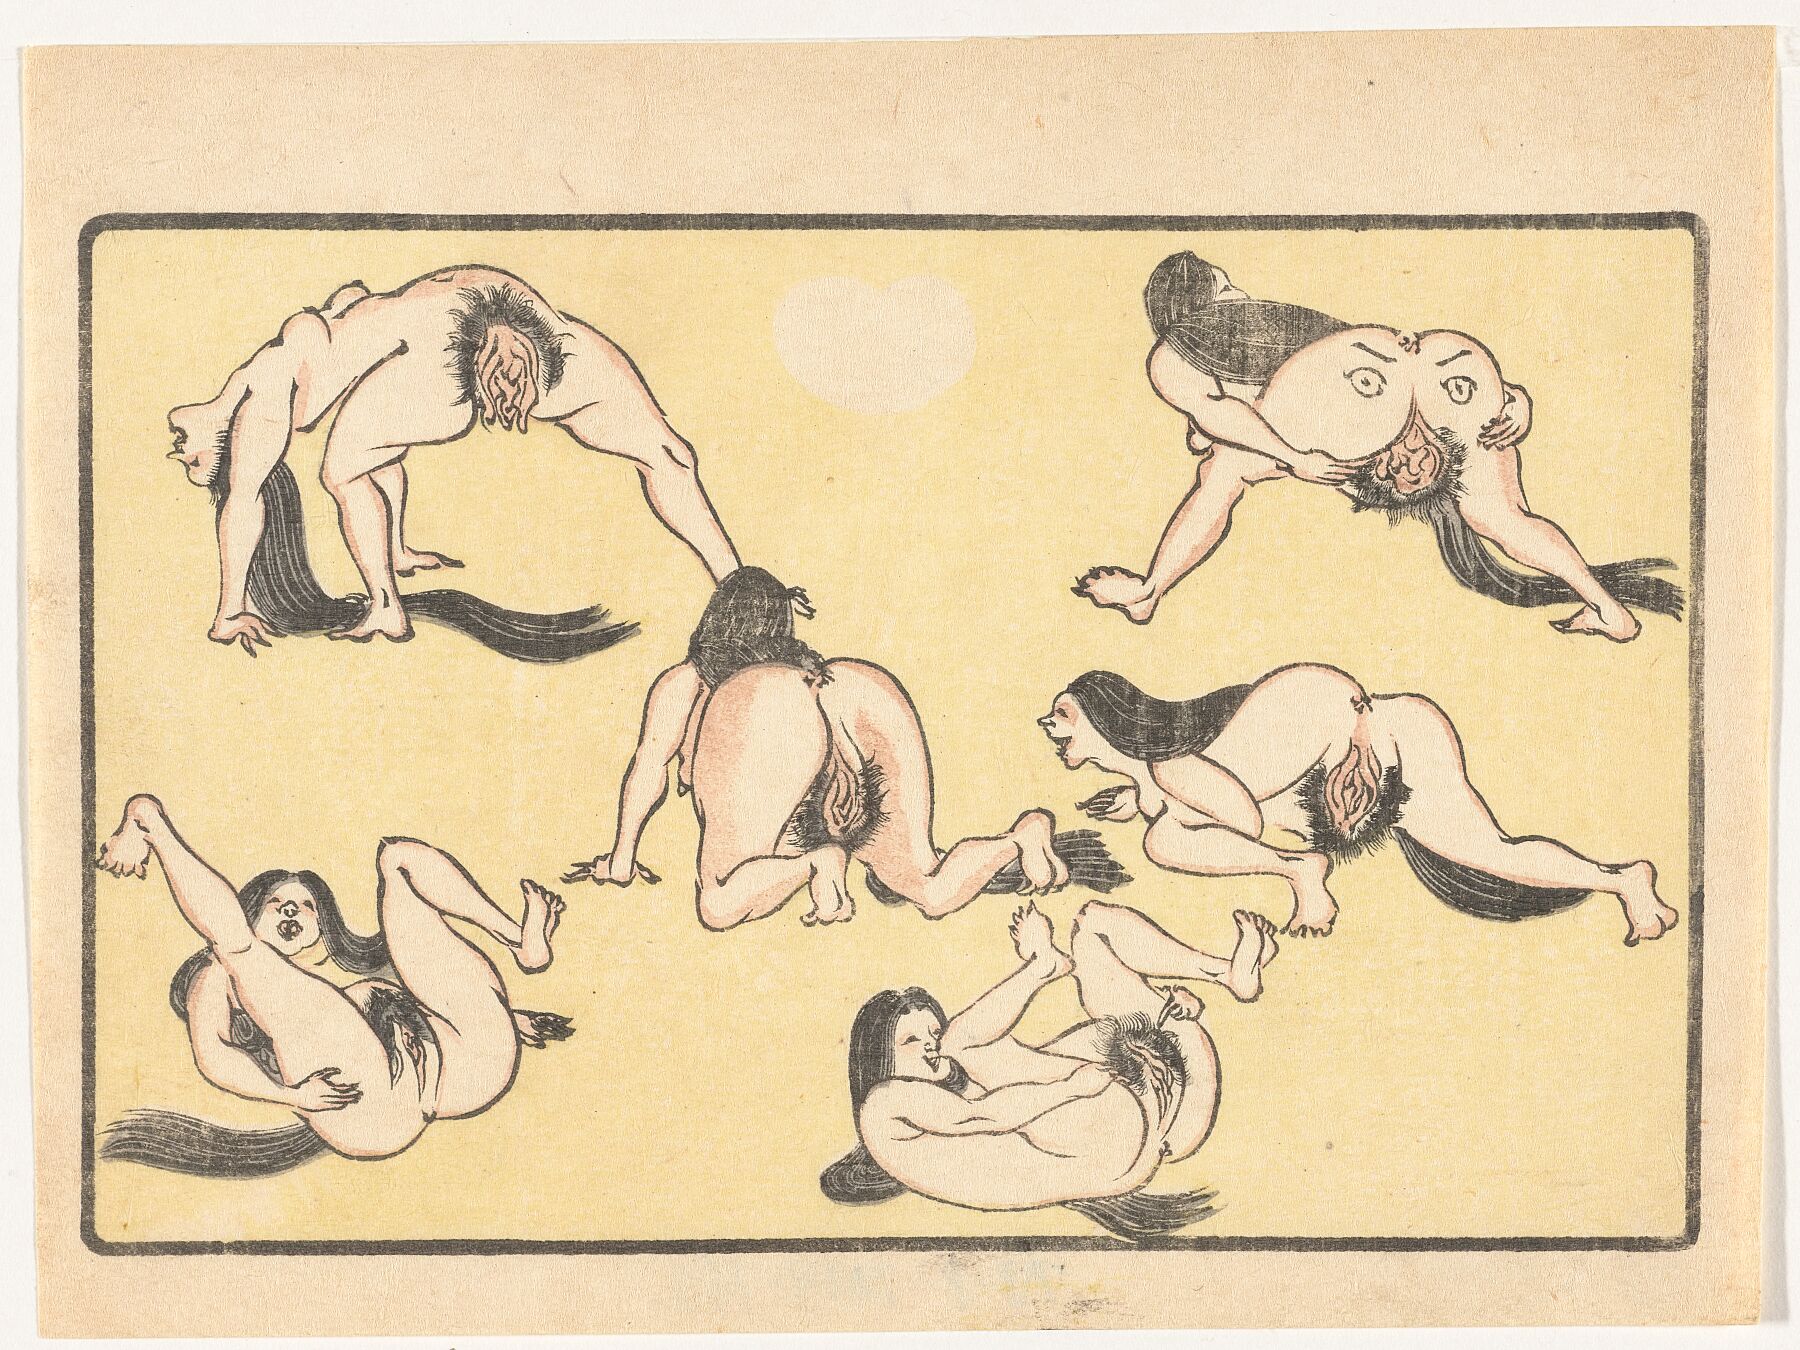 Naked Women by Kawanabe Kyôsai, c. 1870 - c. 1880